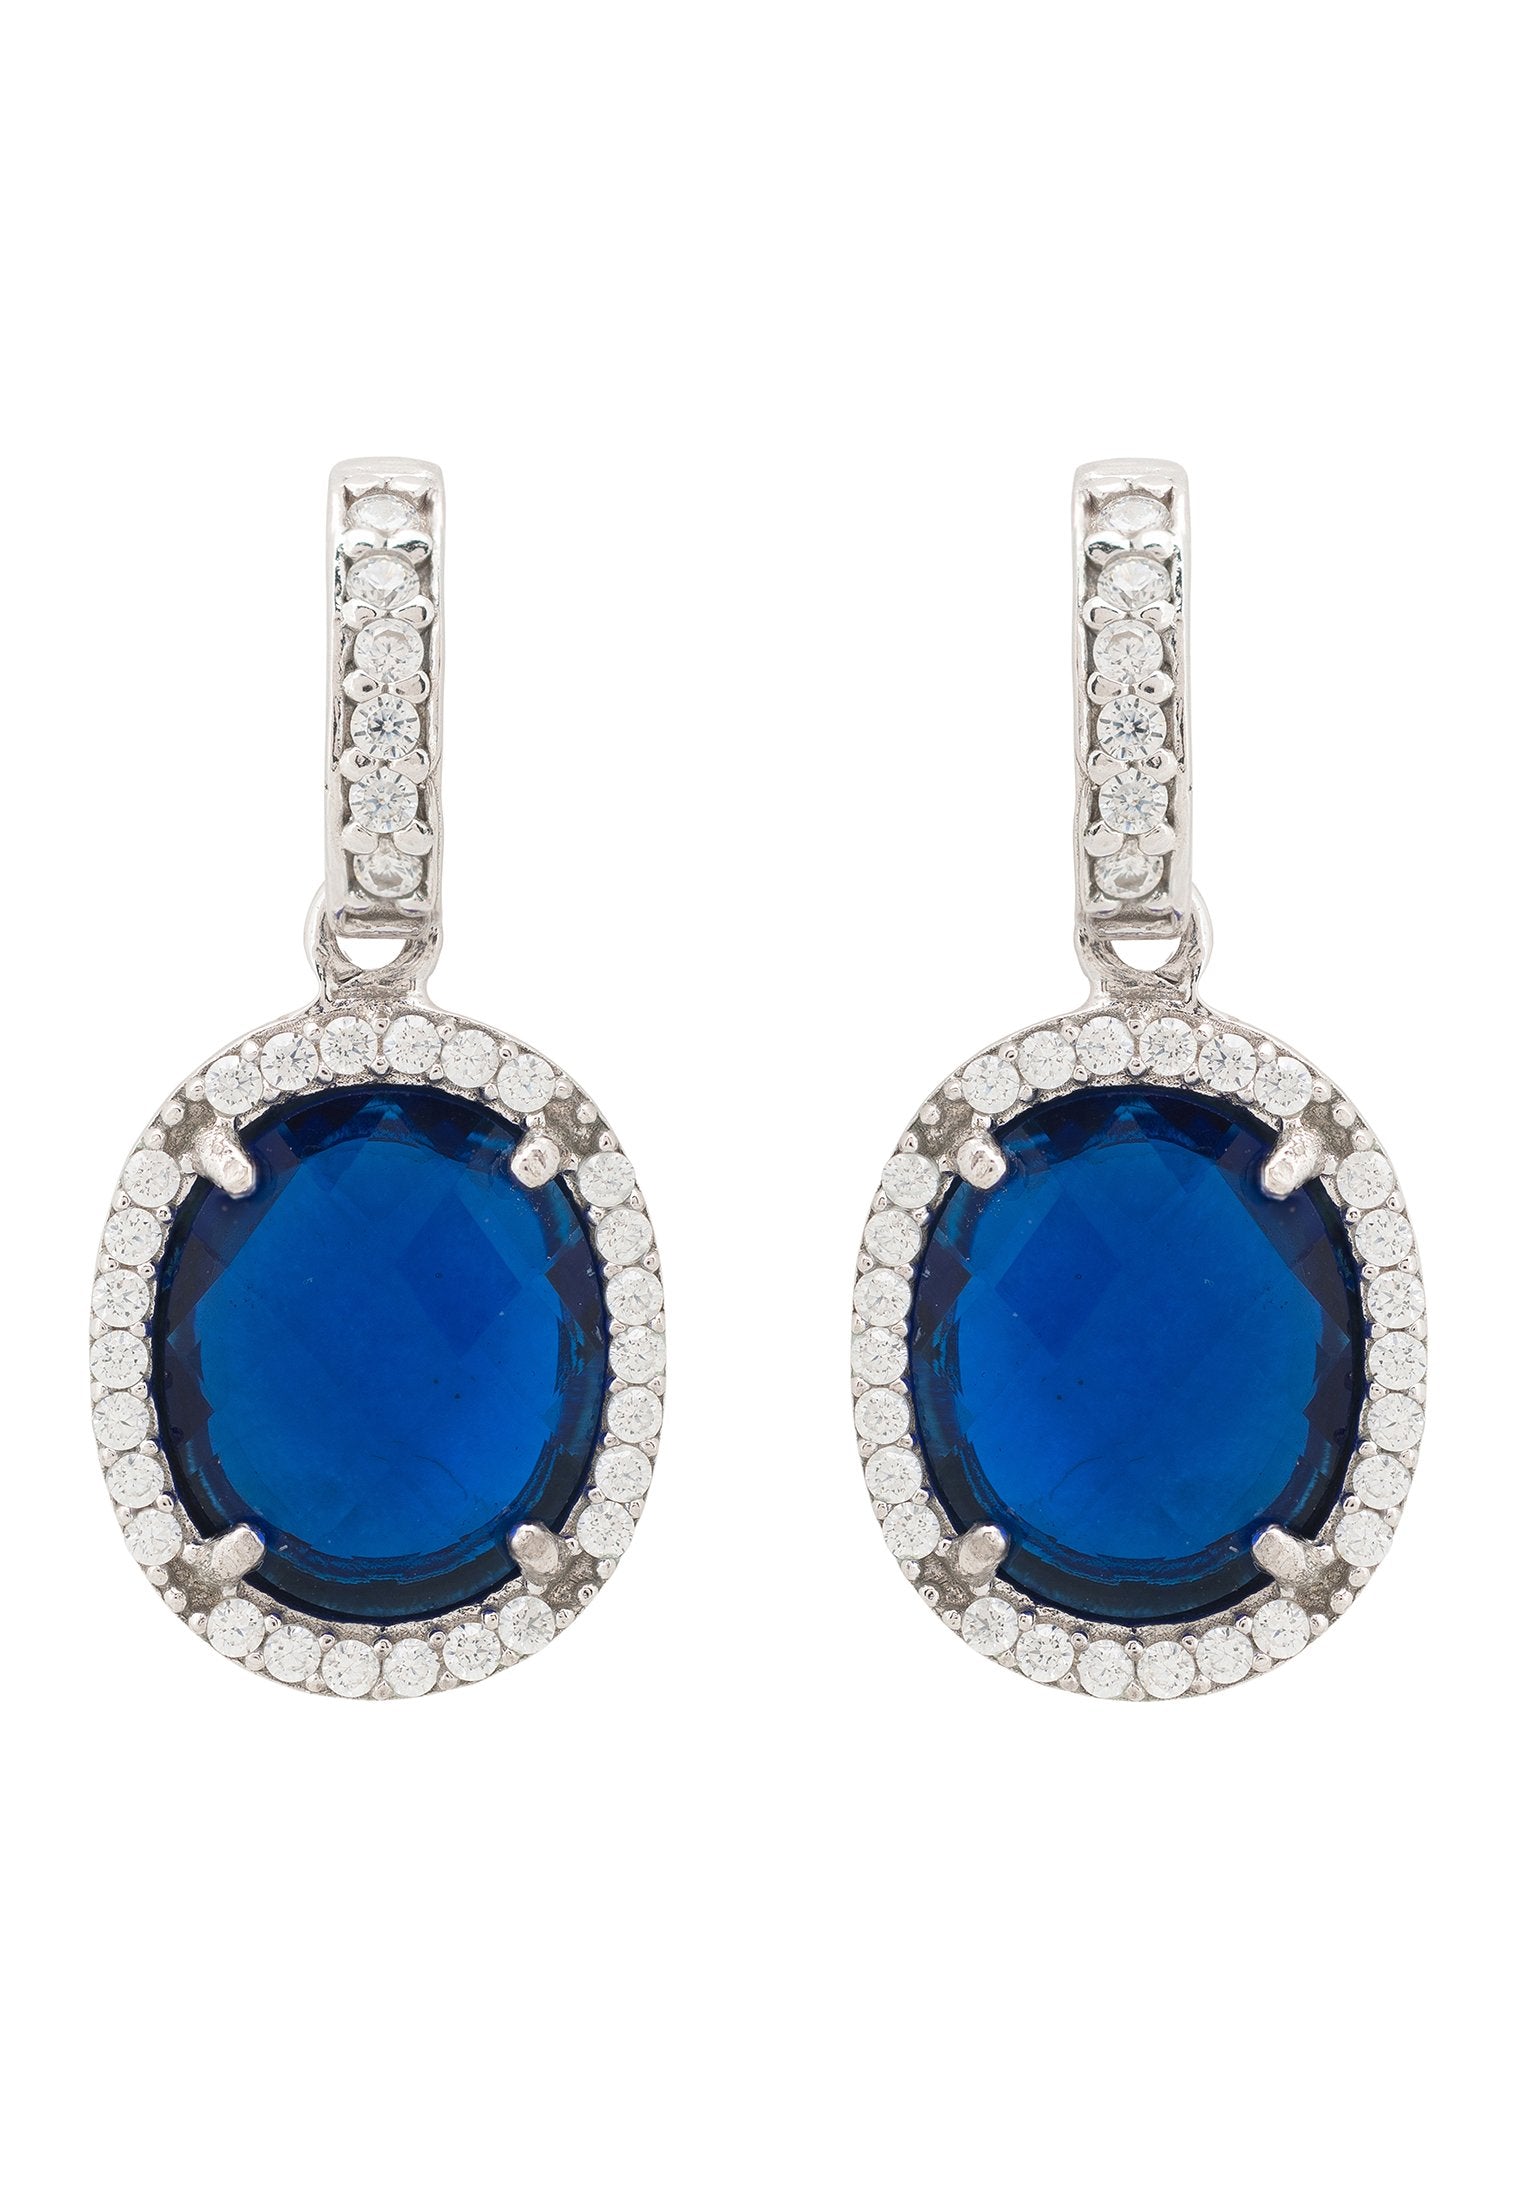 Regal Sapphire Hydro Oval Gemstone Drop Earrings in Sterling Silver - Jewelry & Watches - Bijou Her -  -  - 